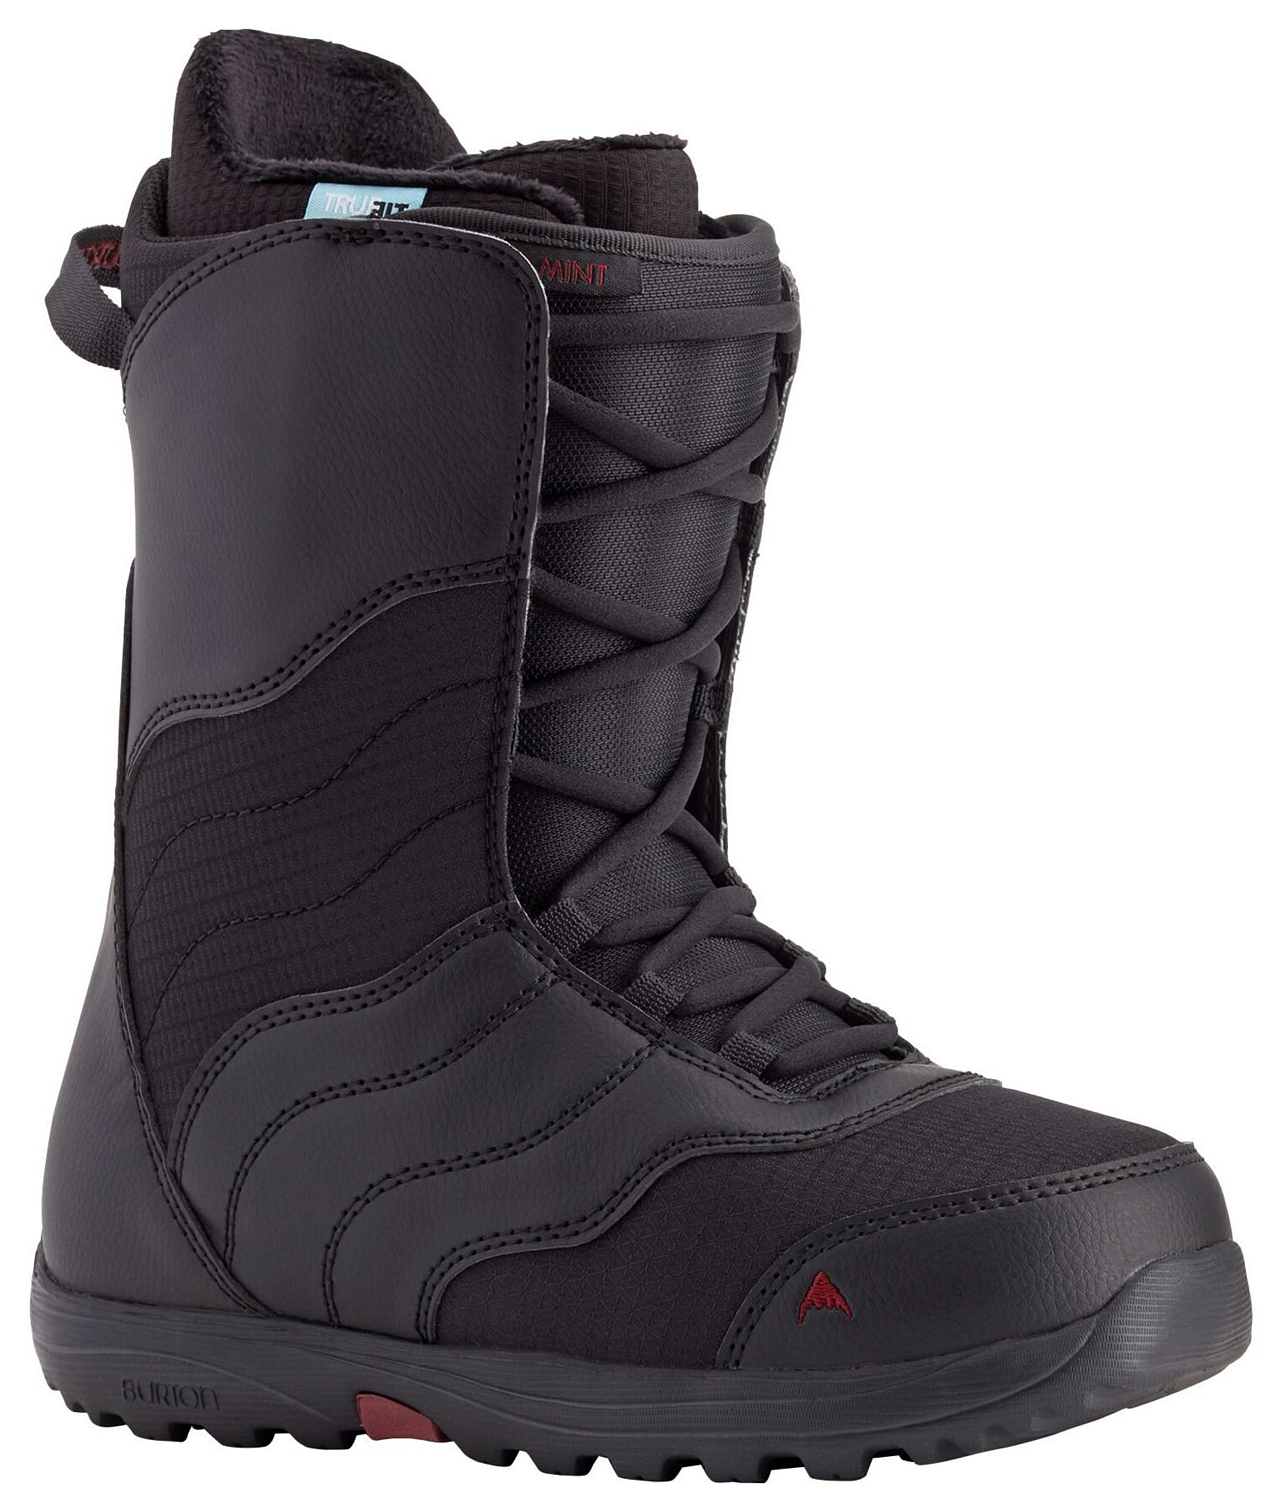 Ботинки сноубордические Burton 20-21 Mint Lace Black лыжные ботинки sns spine comfort 445